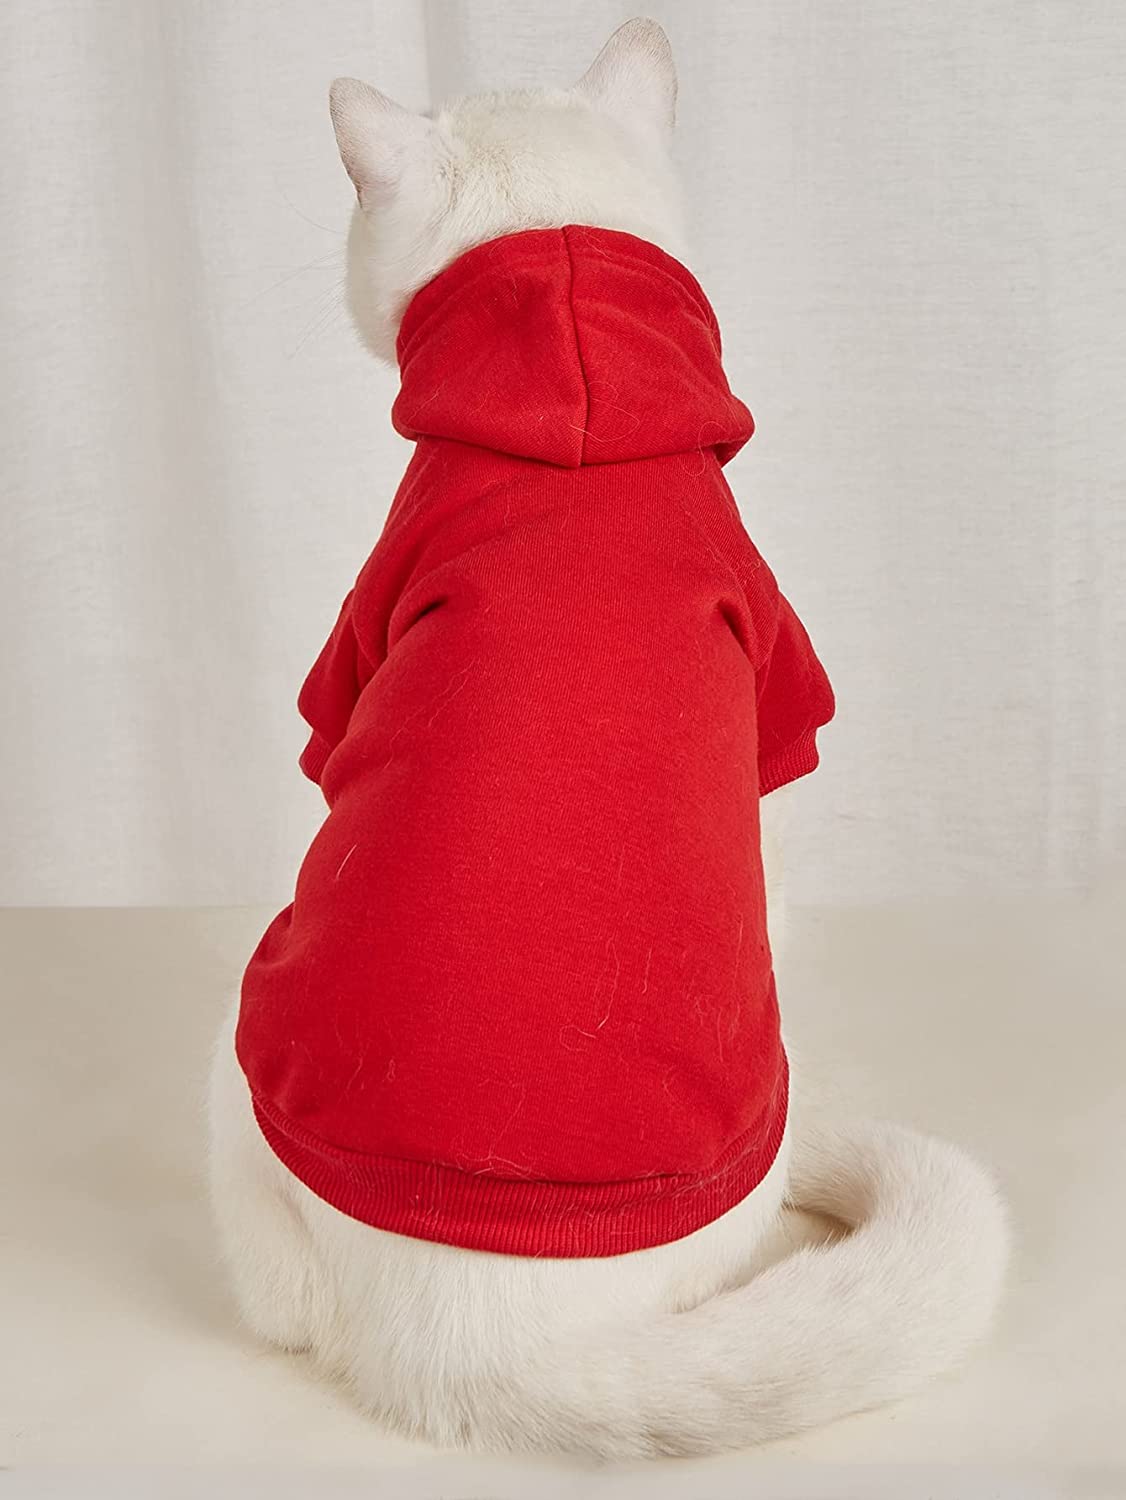   طراحی آستین کوتاه و هودی می تواند حیوانات خانگی شما را در روزهای سرد گرم نگه دارد